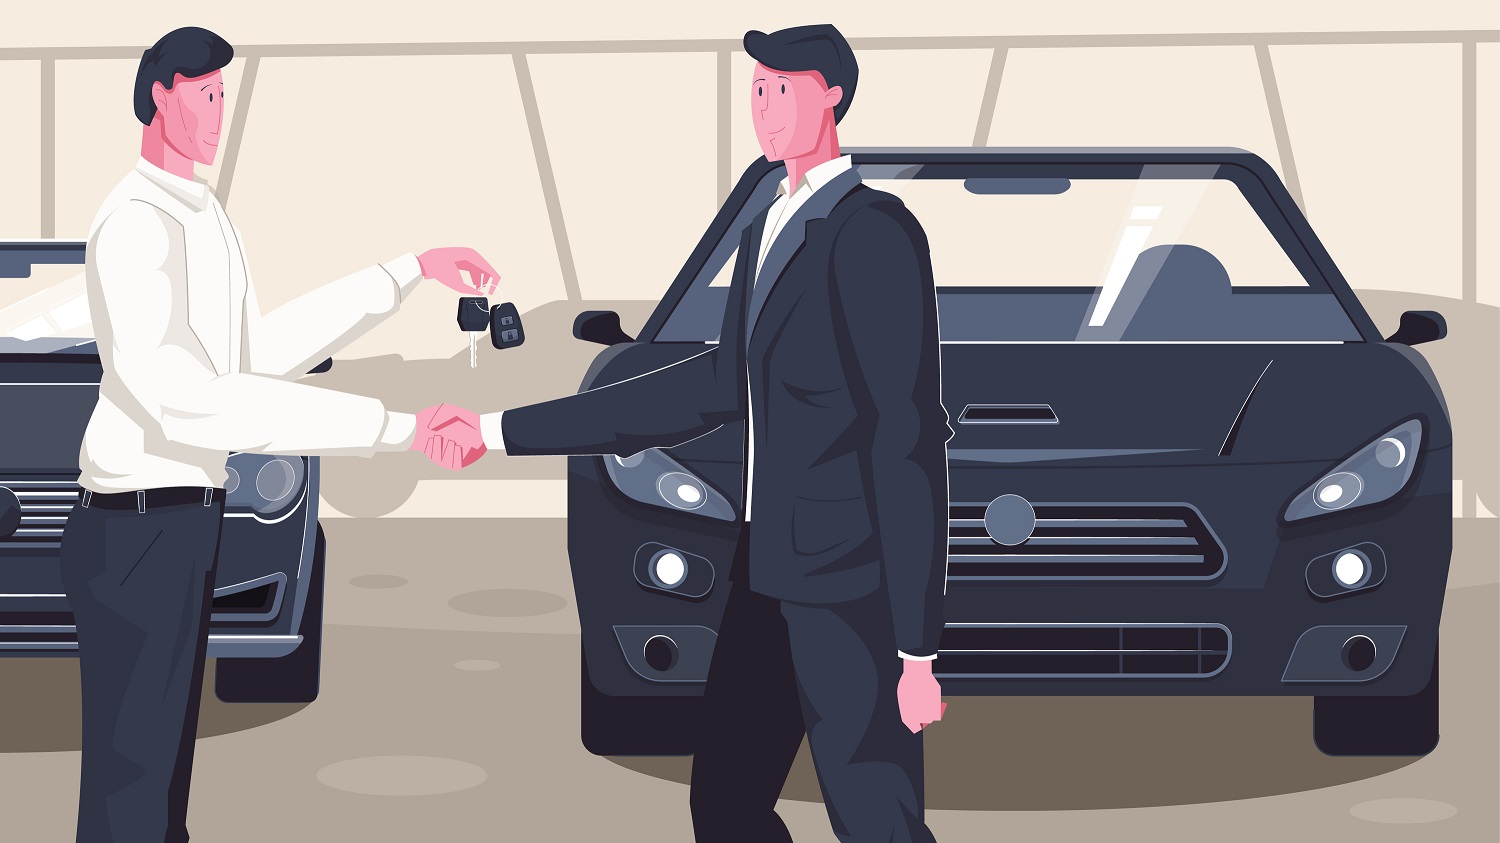 Grafika wektorowa - dwóch mężczyzn, jeden przekazuje drugiemu kluczyki do samochodu, w tle parking z samochodami